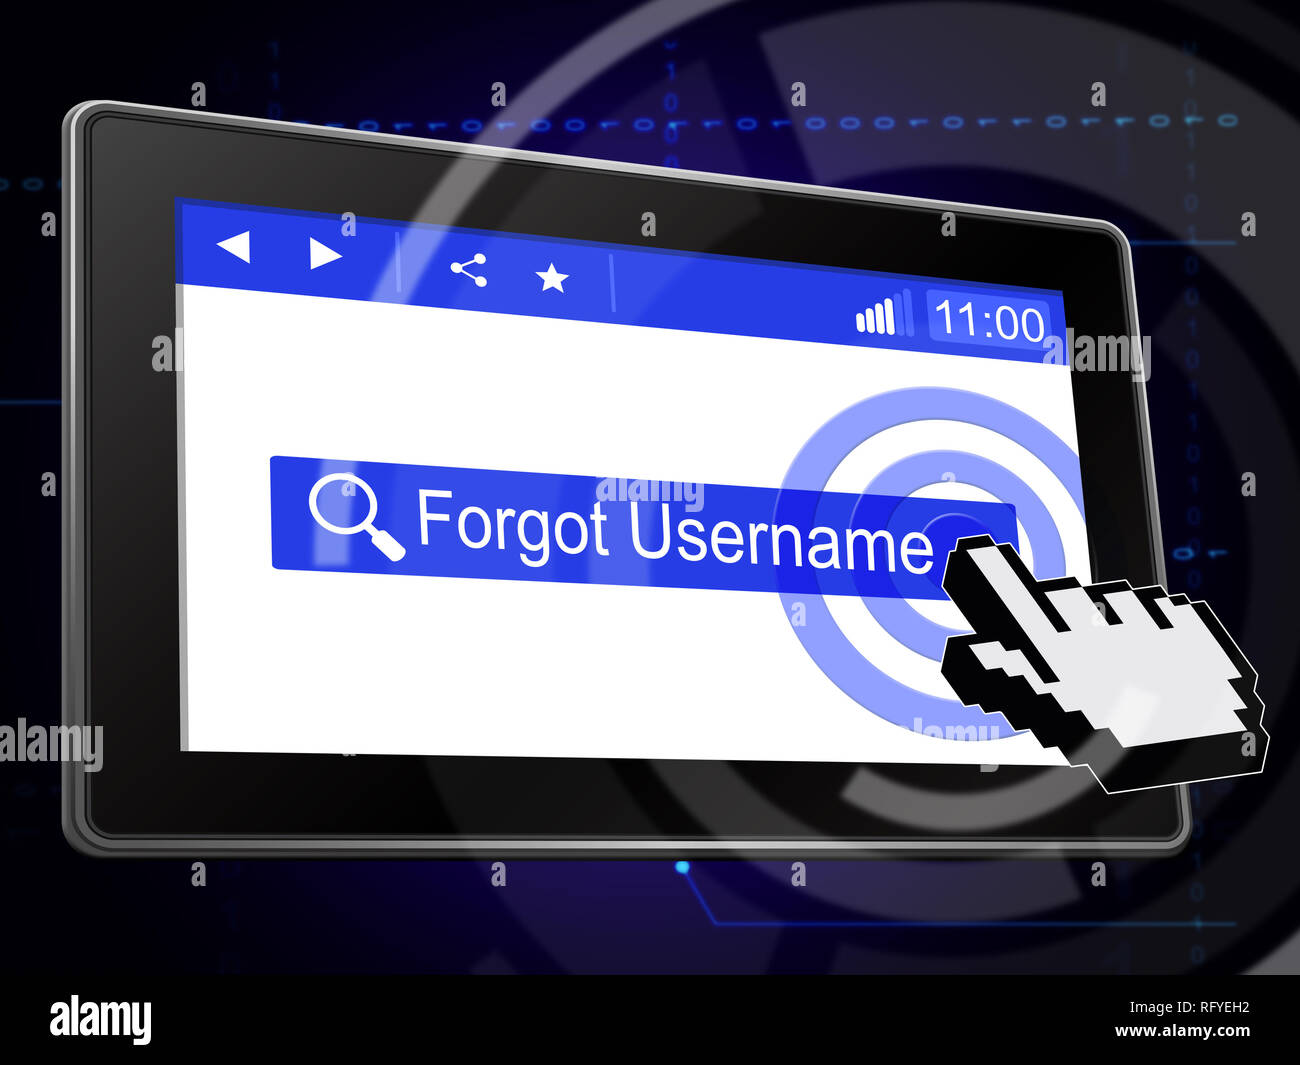 Benutzername vergessen Tablet bedeutet Falsche Benutzer-ID eingegeben. Online-ID-Fehler - 3D-Darstellung Stockfoto